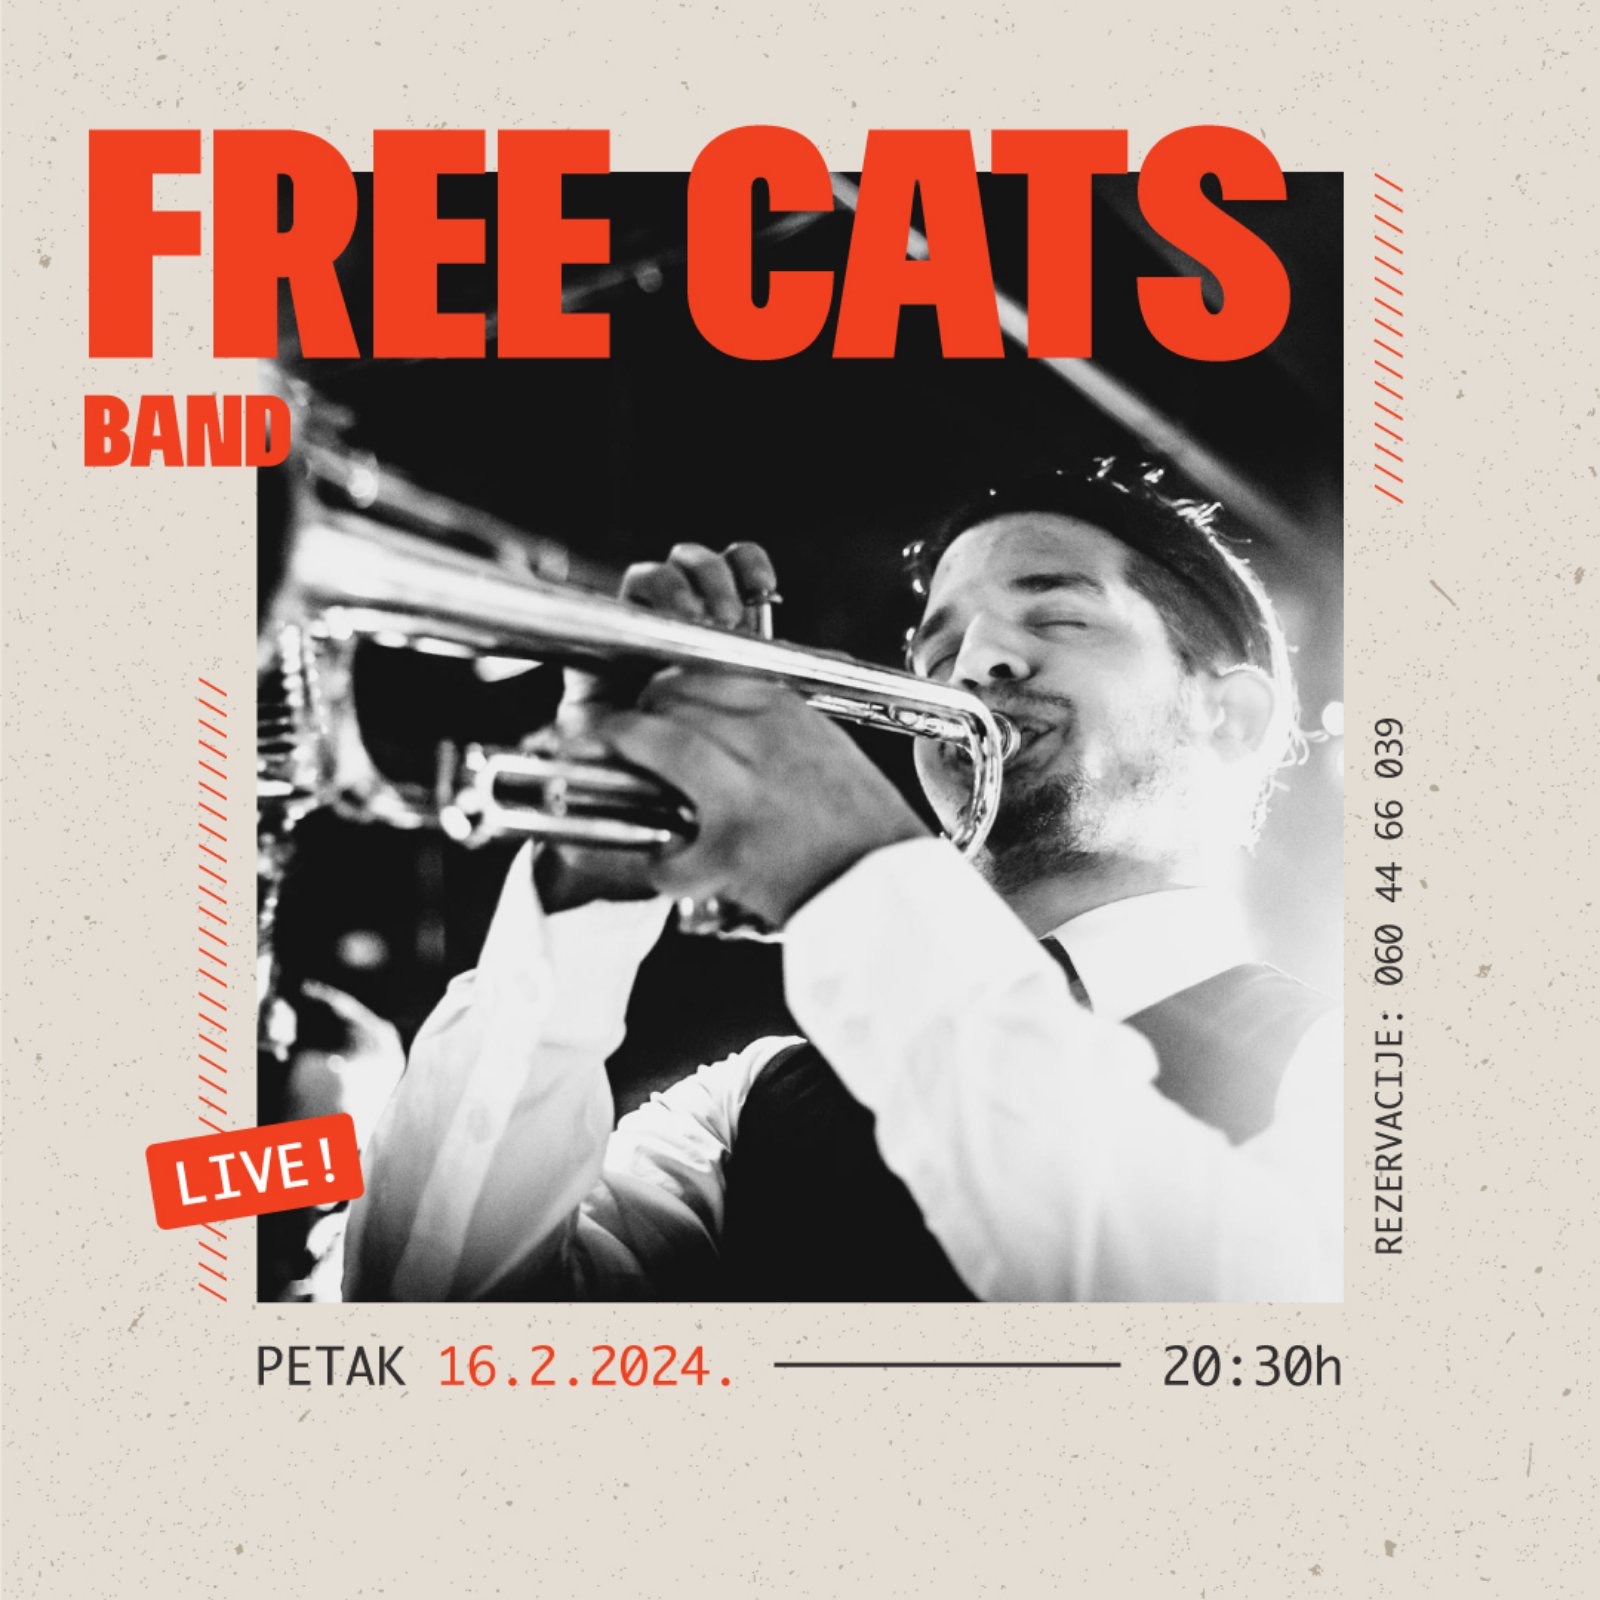 Kod domaćina pravog džez zvuka, Free cats band ponovo dolazi u goste! Barrel House vam nudi idealnu priliku da pokažete svoje plesne korake uz vaše omiljene hitove. Obezbedite vaše mesto u petak 16.2. pozivom na večeri dobrog ritma. 